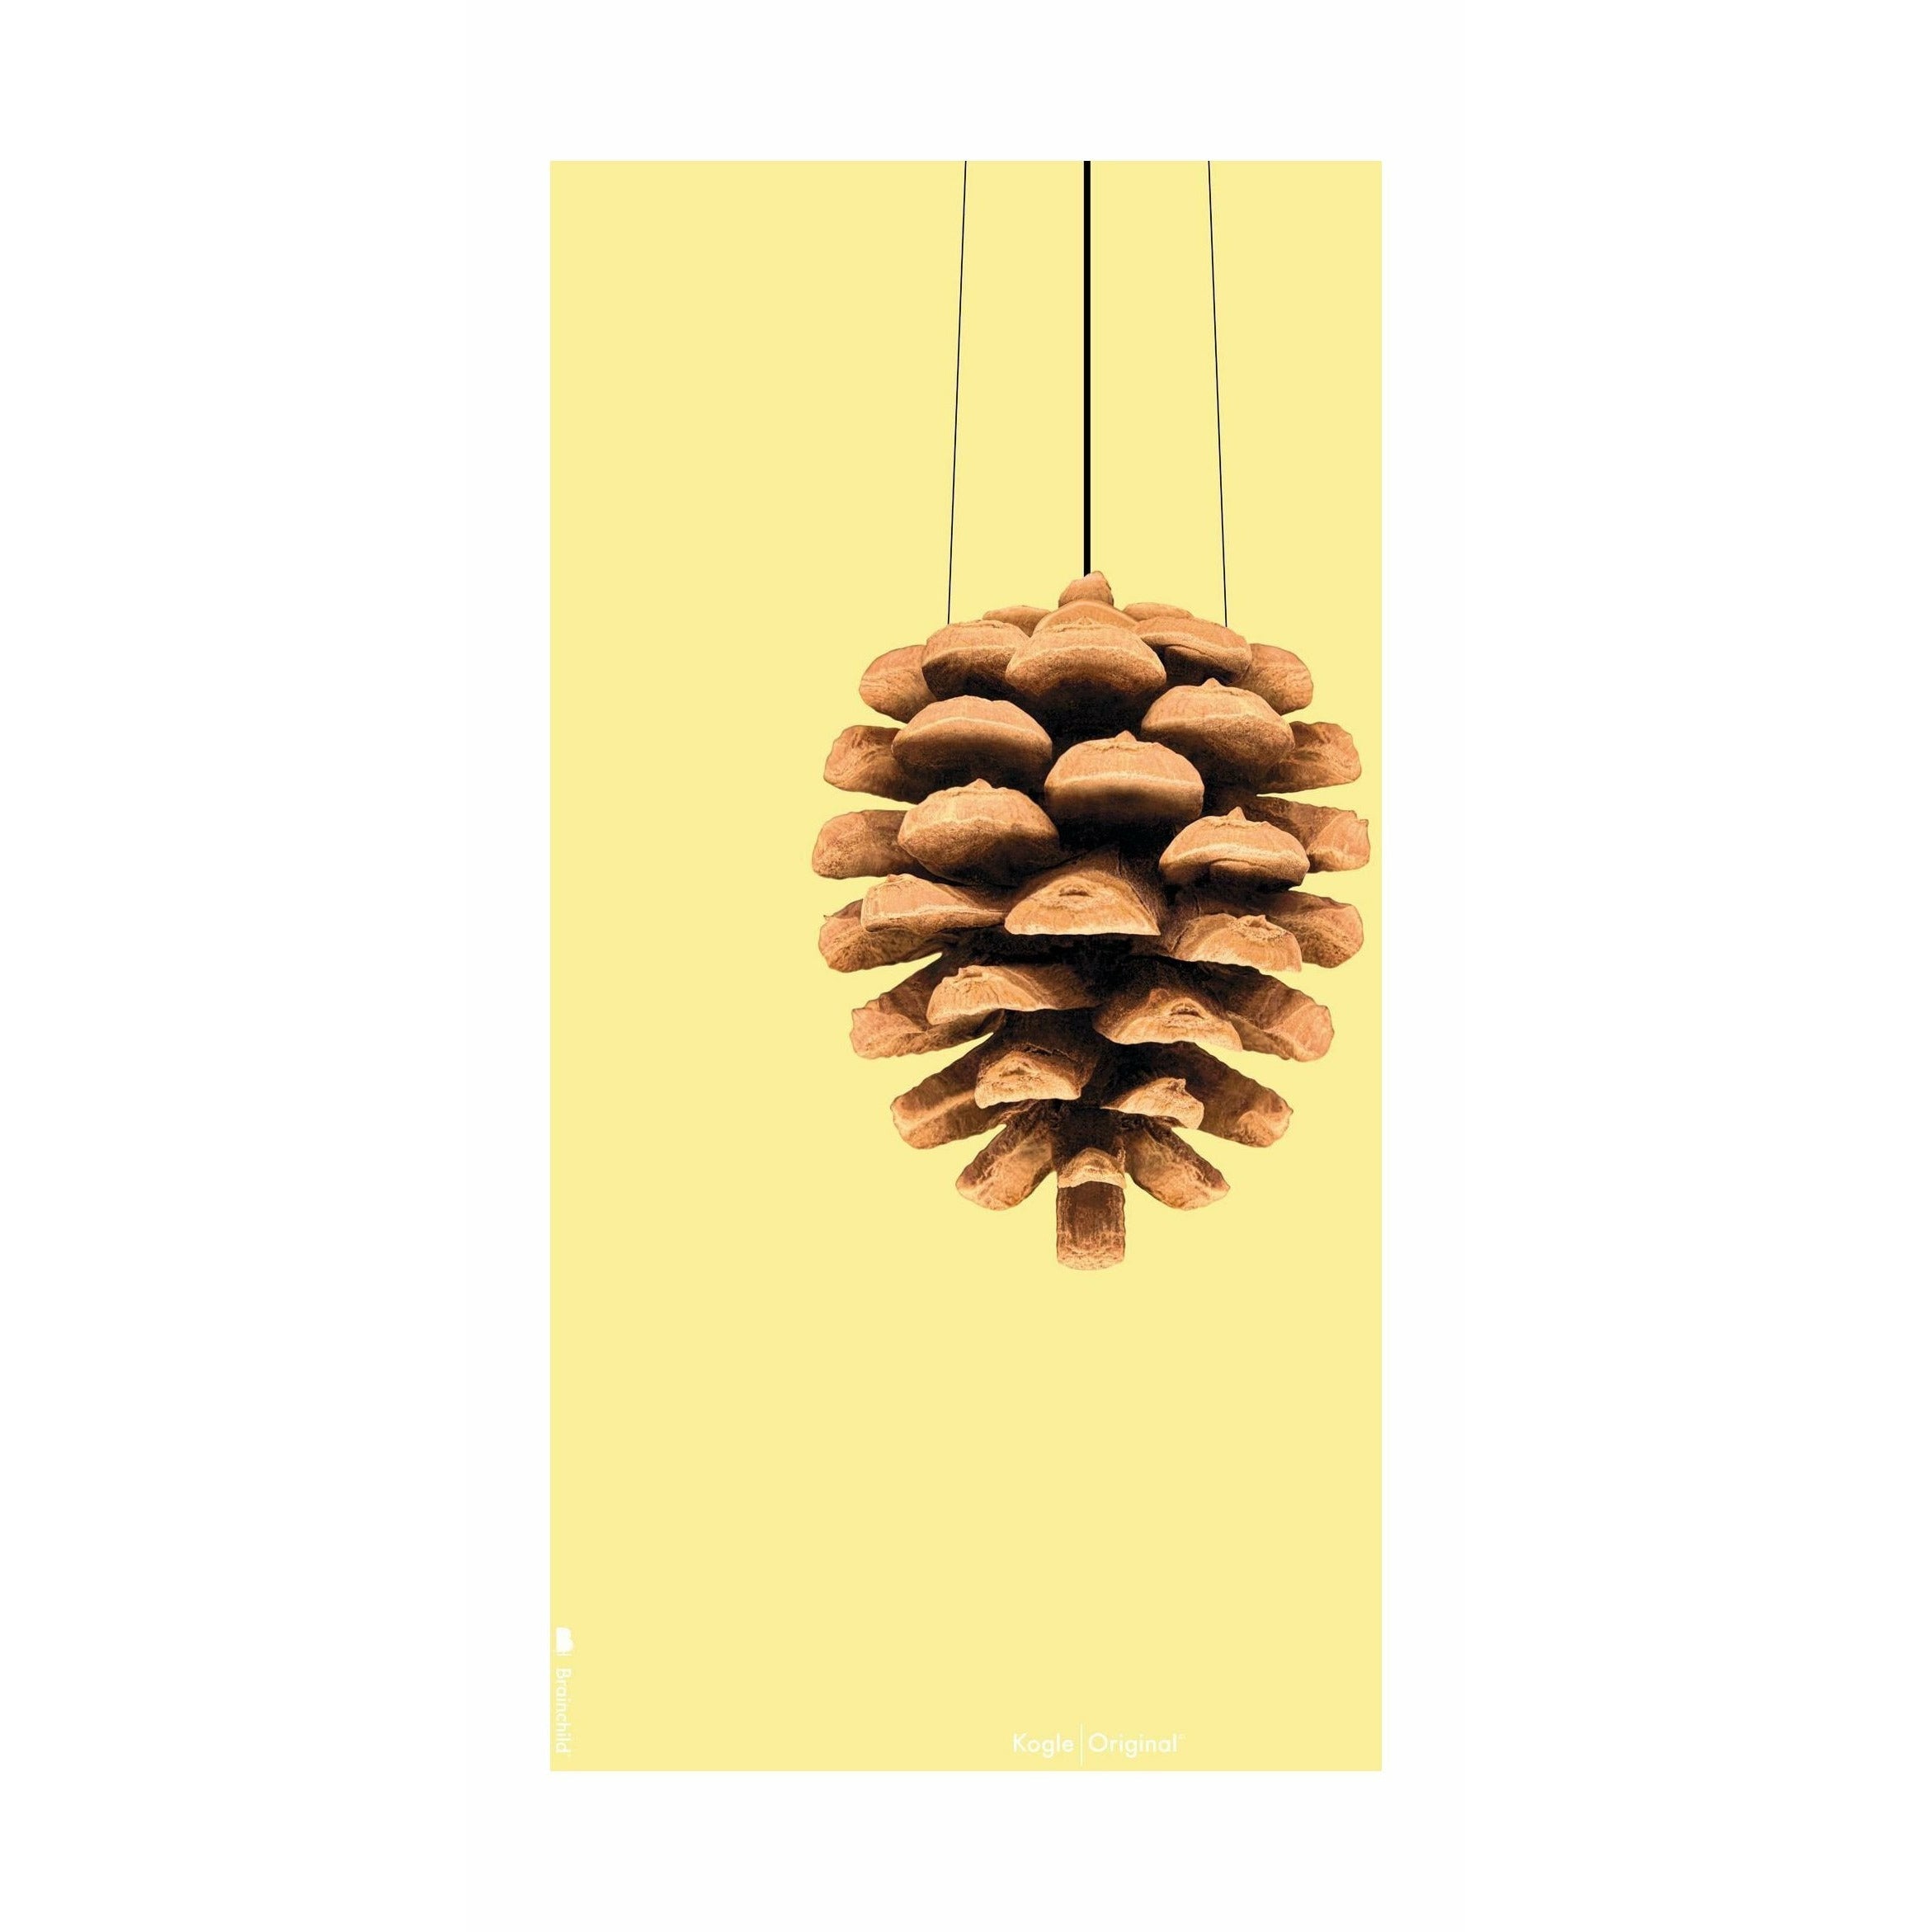 brainchild Pine Cone Classic Poster zonder frame 50x70 cm, gele achtergrond